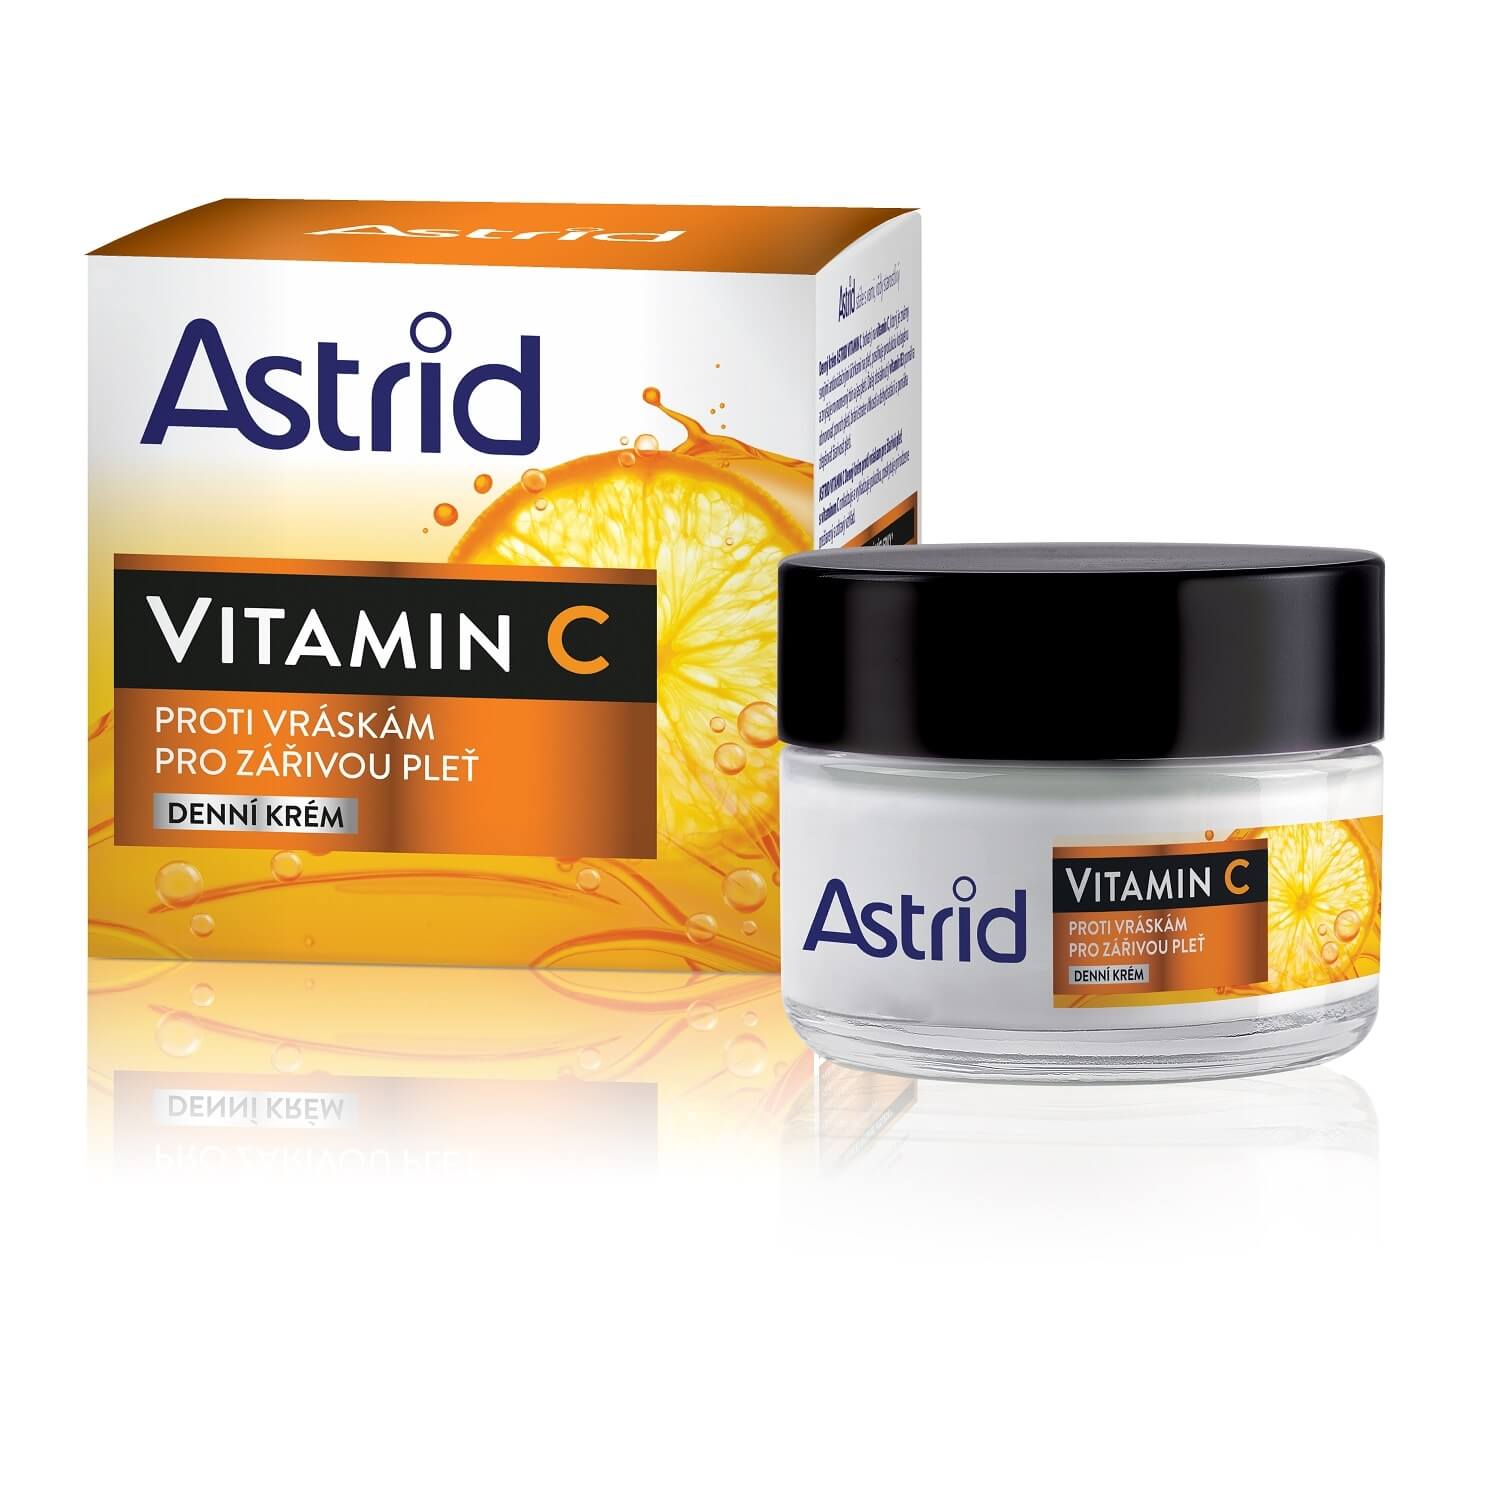 Astrid Denní krém proti vráskám pro zářivou pleť Vitamin C 50 ml